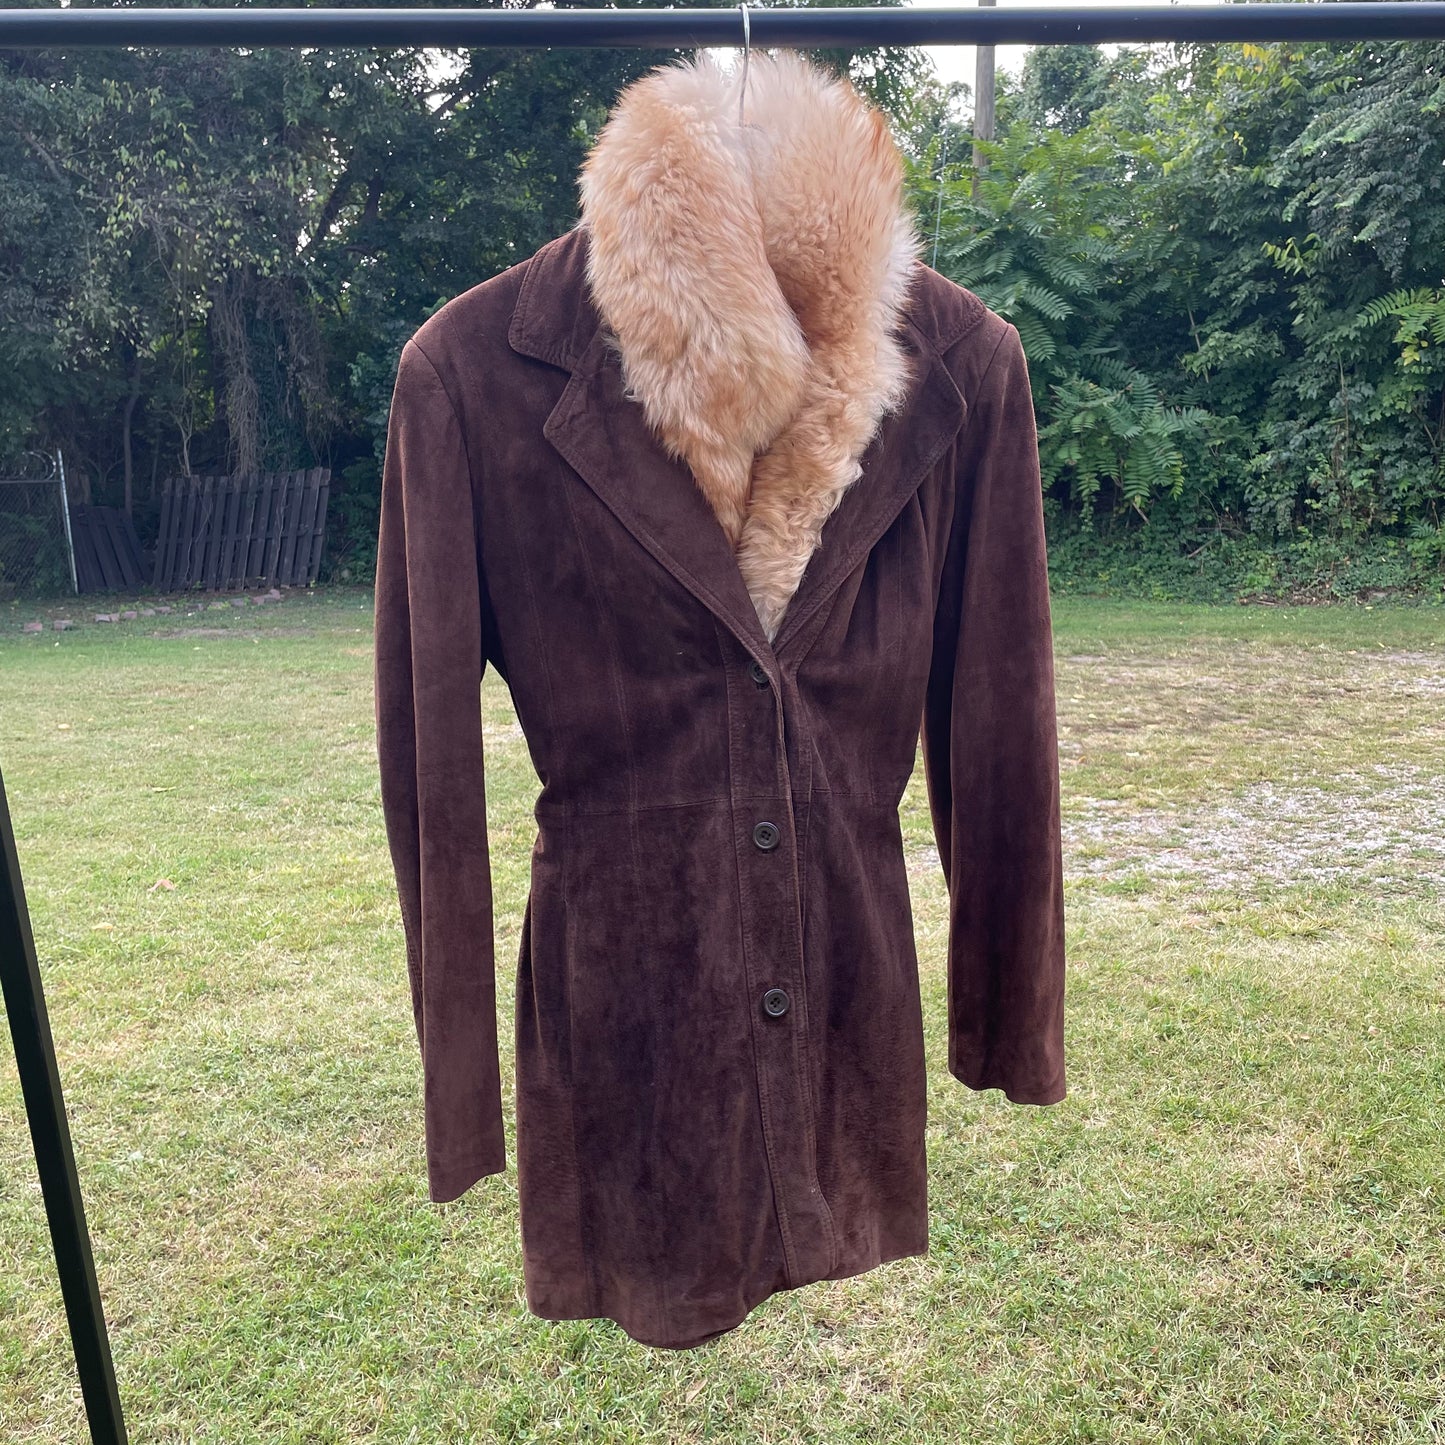 VTG Deerskin Trading Post Dark Brown Suede Coat with Fur Collar